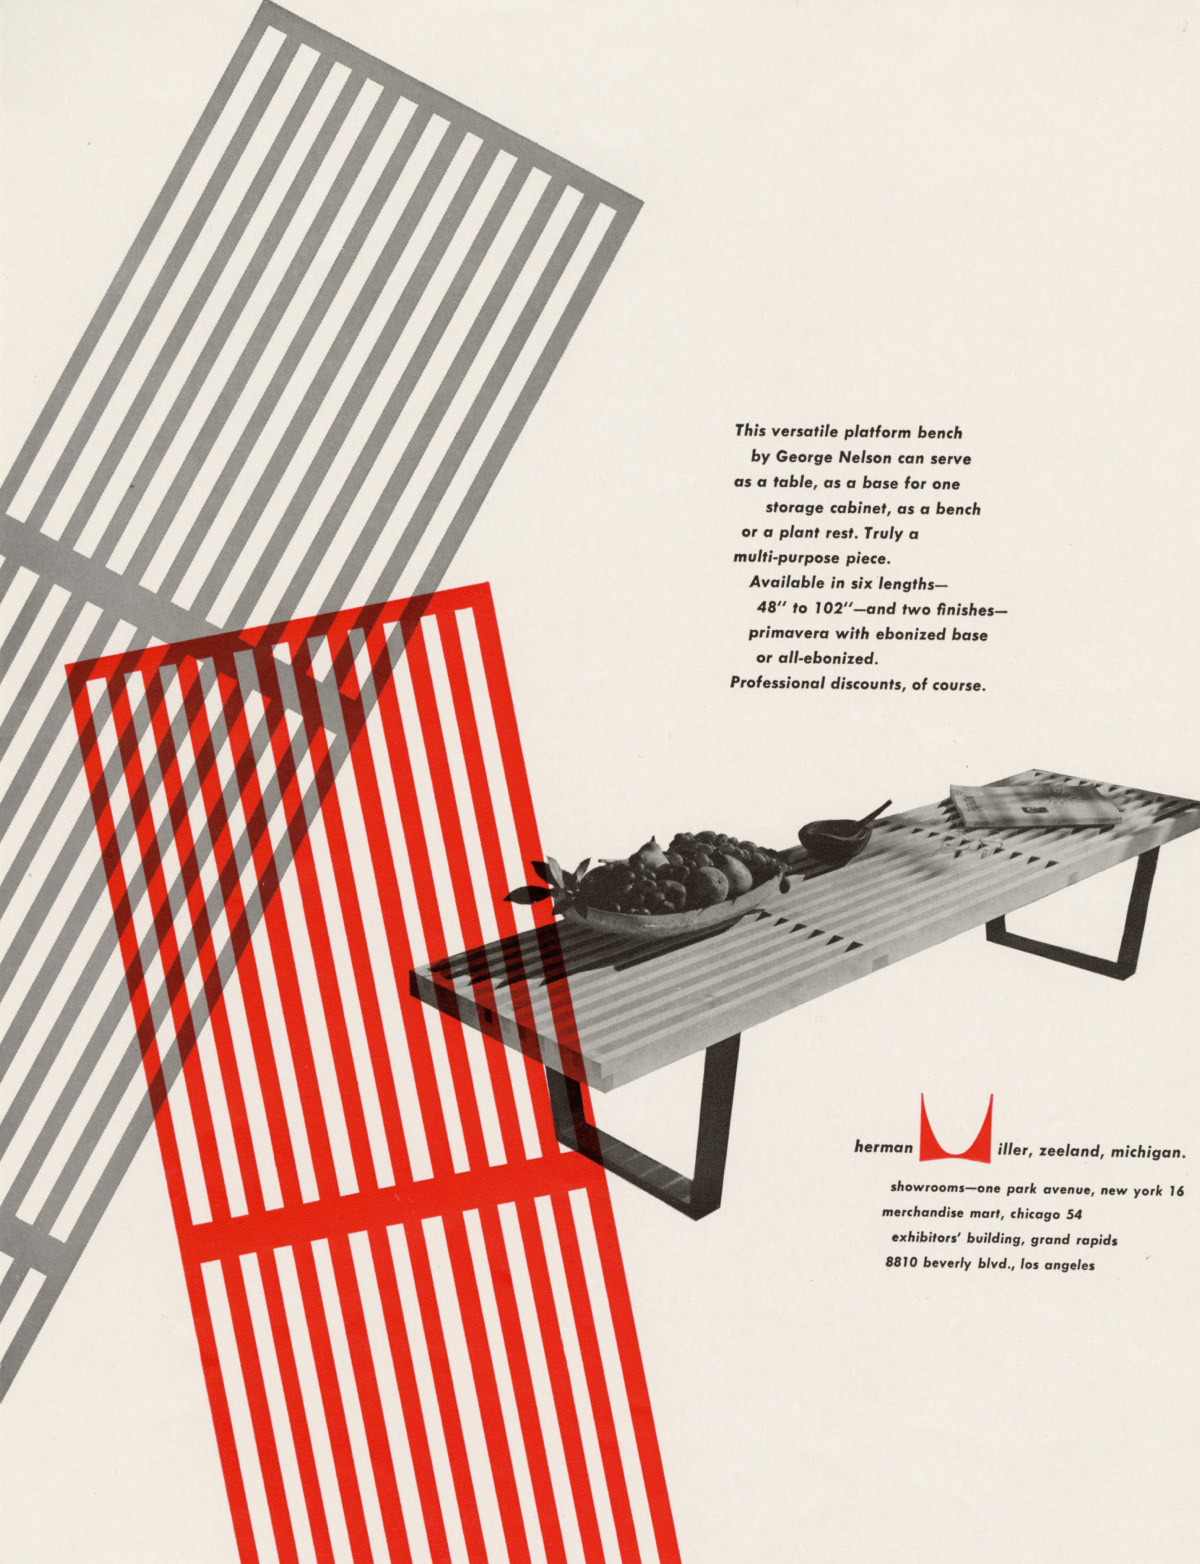 广告中最显眼的是Nelson长凳的凳面阴影里采用灰色和红色大胆搭配的图案，右侧是配搭的促销文字以及斜向摆放的Nelson长凳图片，长凳上放着一些装饰性的小物件。